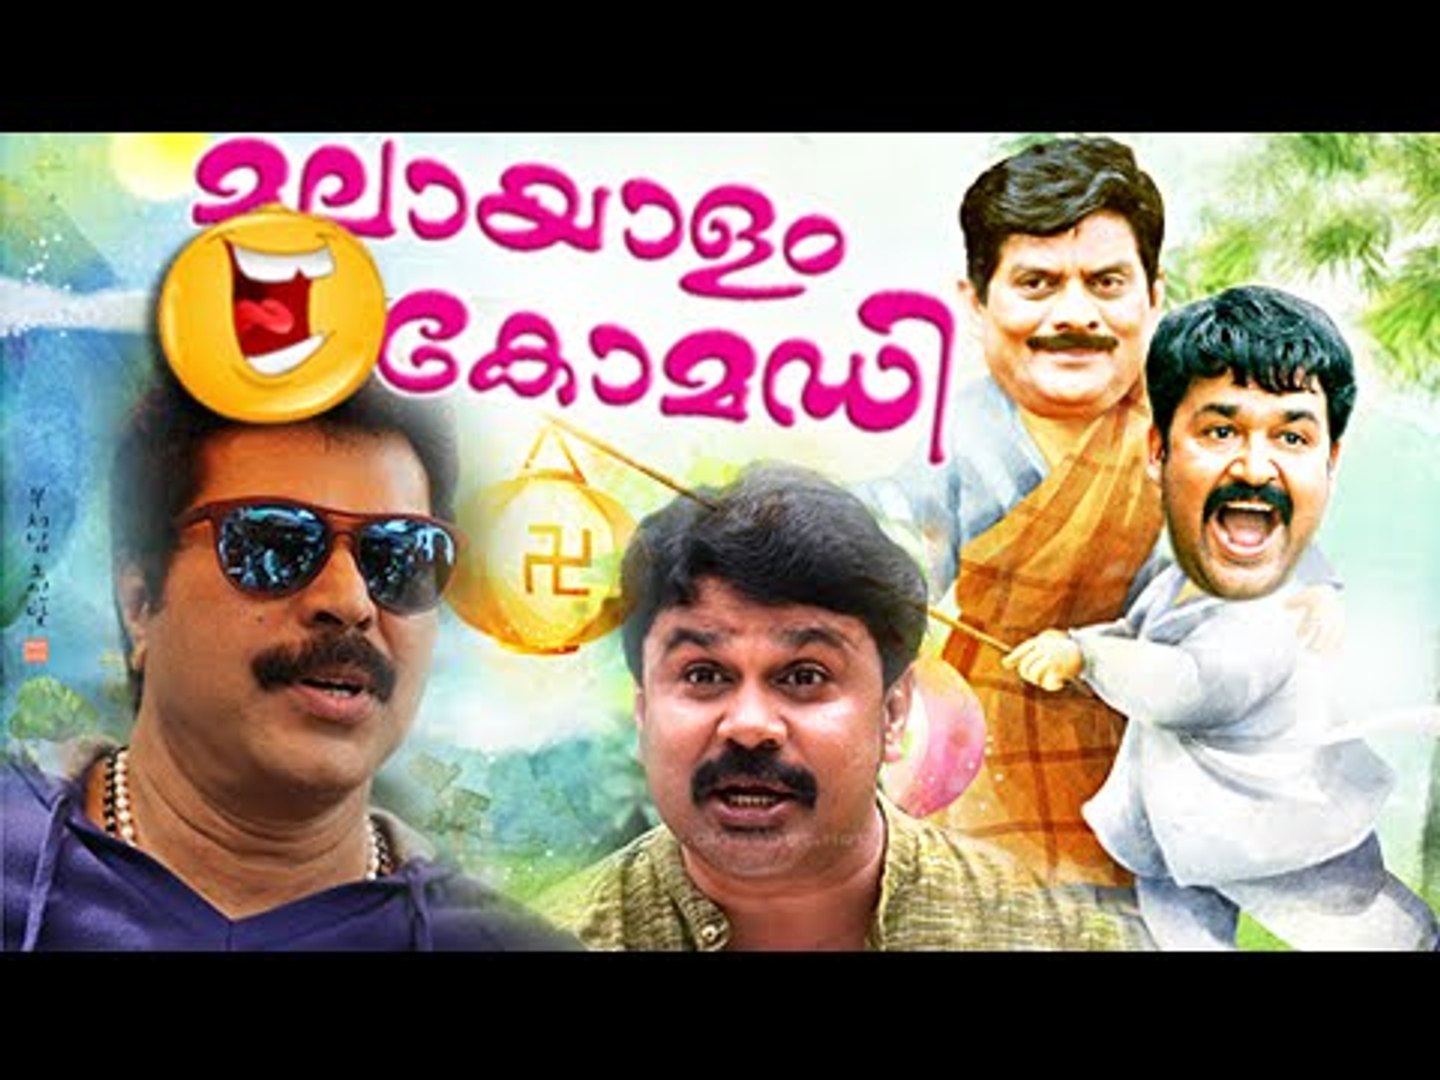 Malayalam Movie Non Stop Comedy Scenes | Malayalam Comedy Scenes | Malayalam Comedy Movies Vol-6